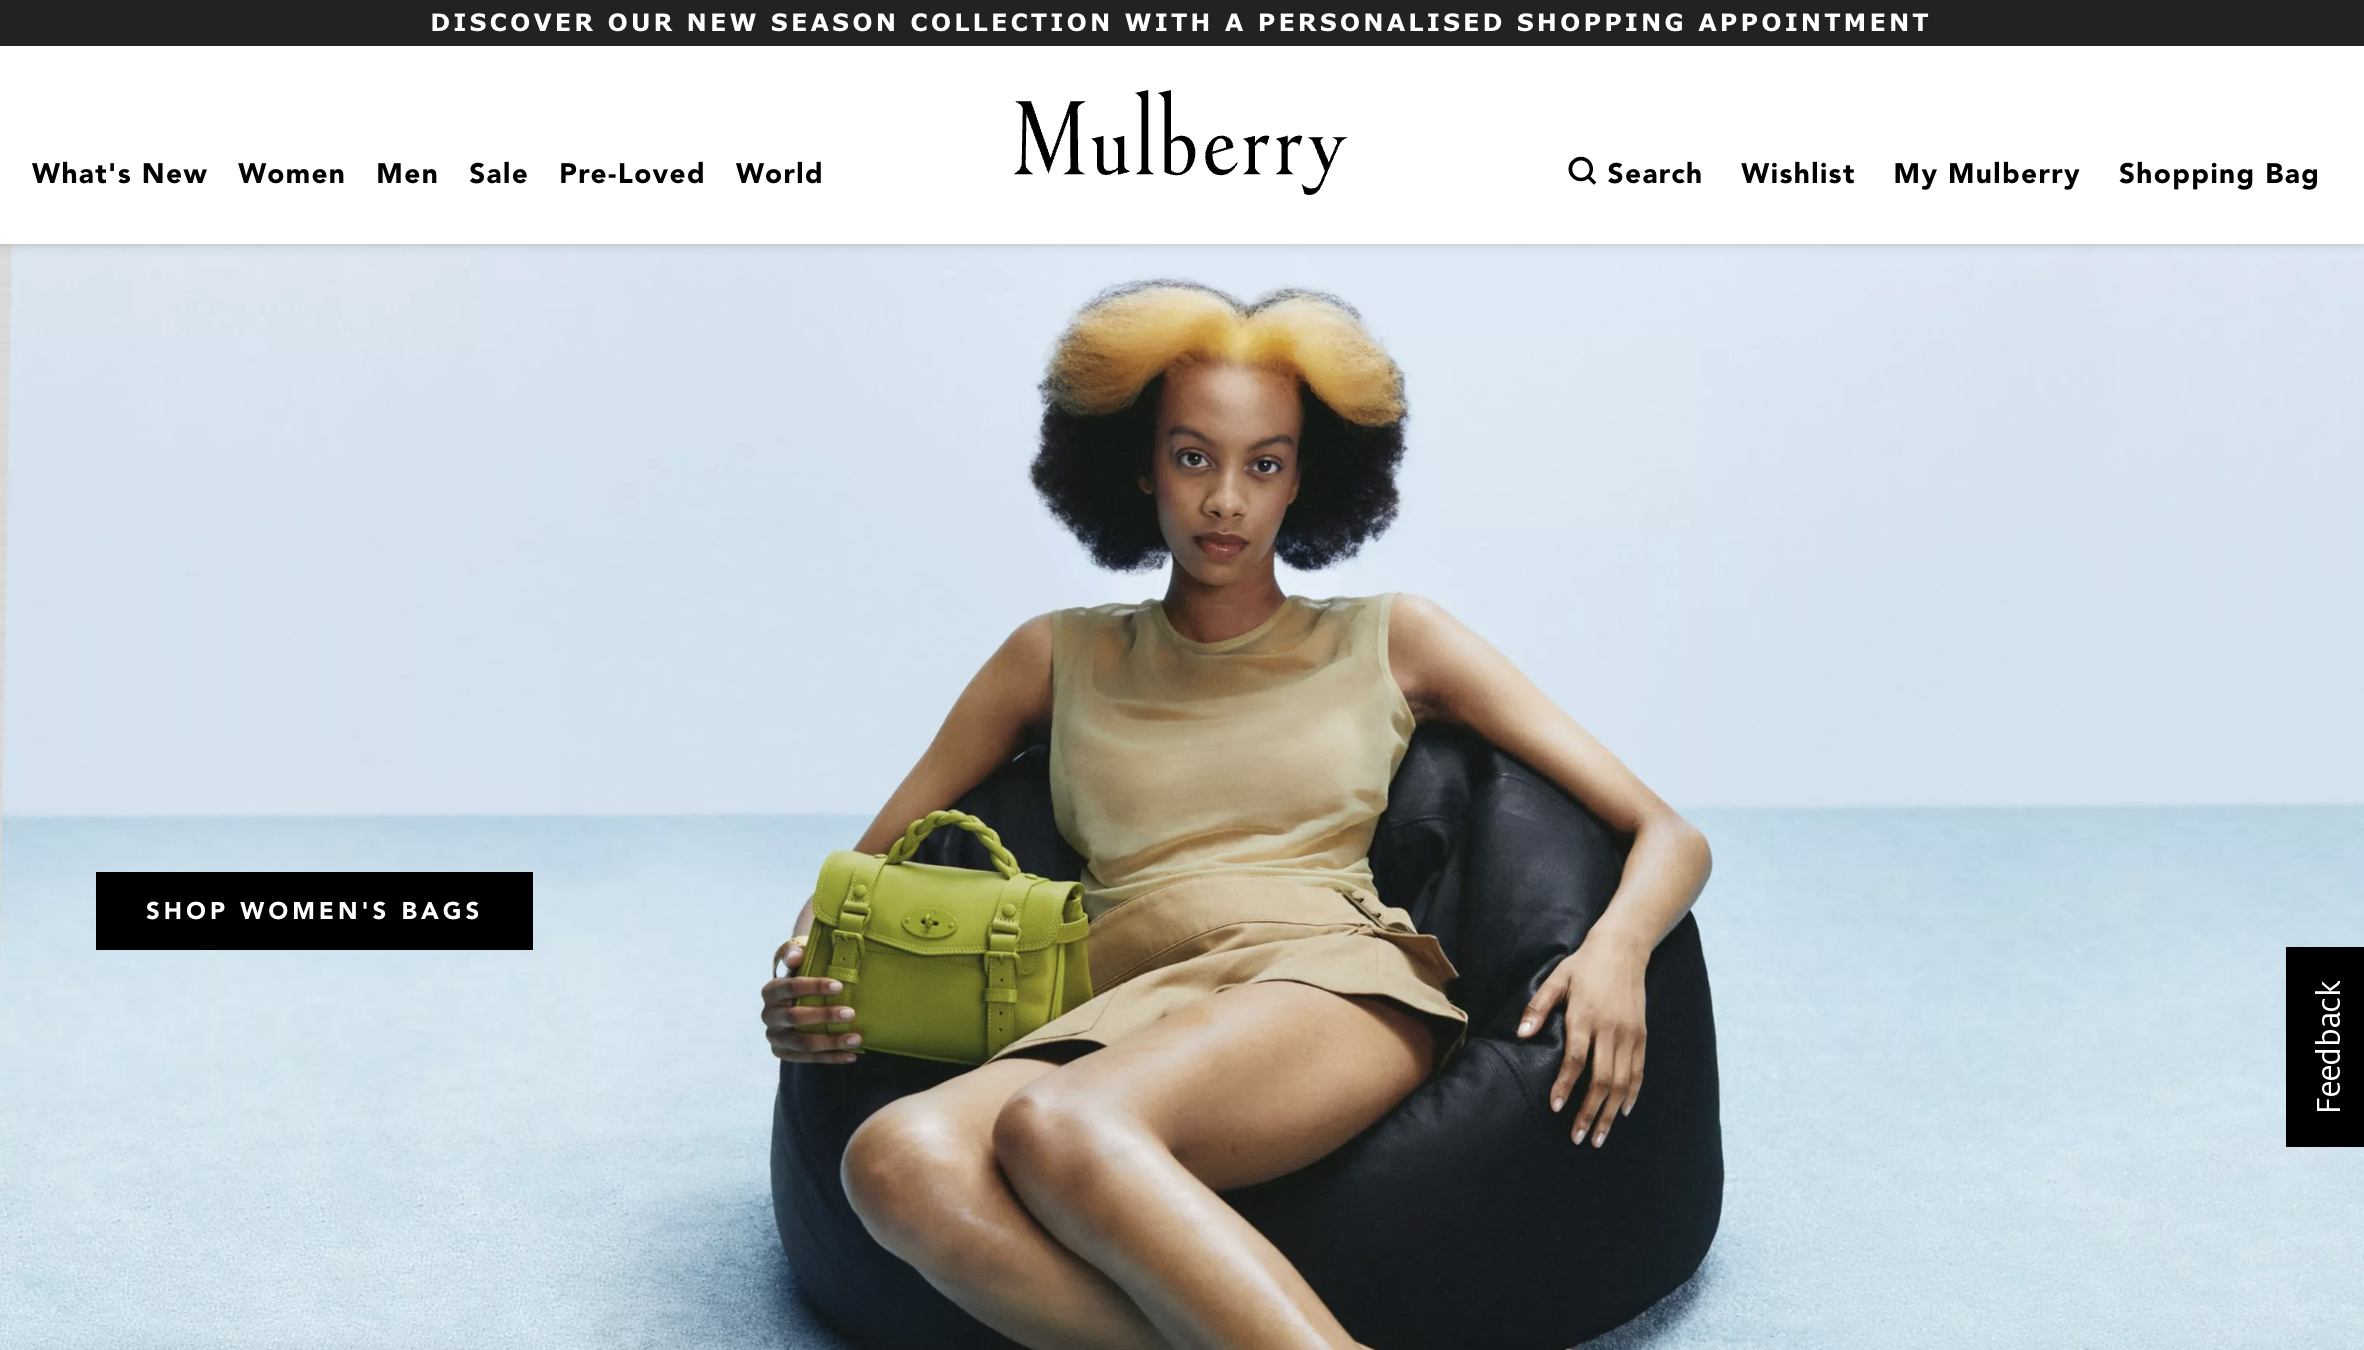 英国奢侈手袋品牌 Mulberry 拒绝零售大亨 Ashley 加入董事会，称其“专业知识不足”